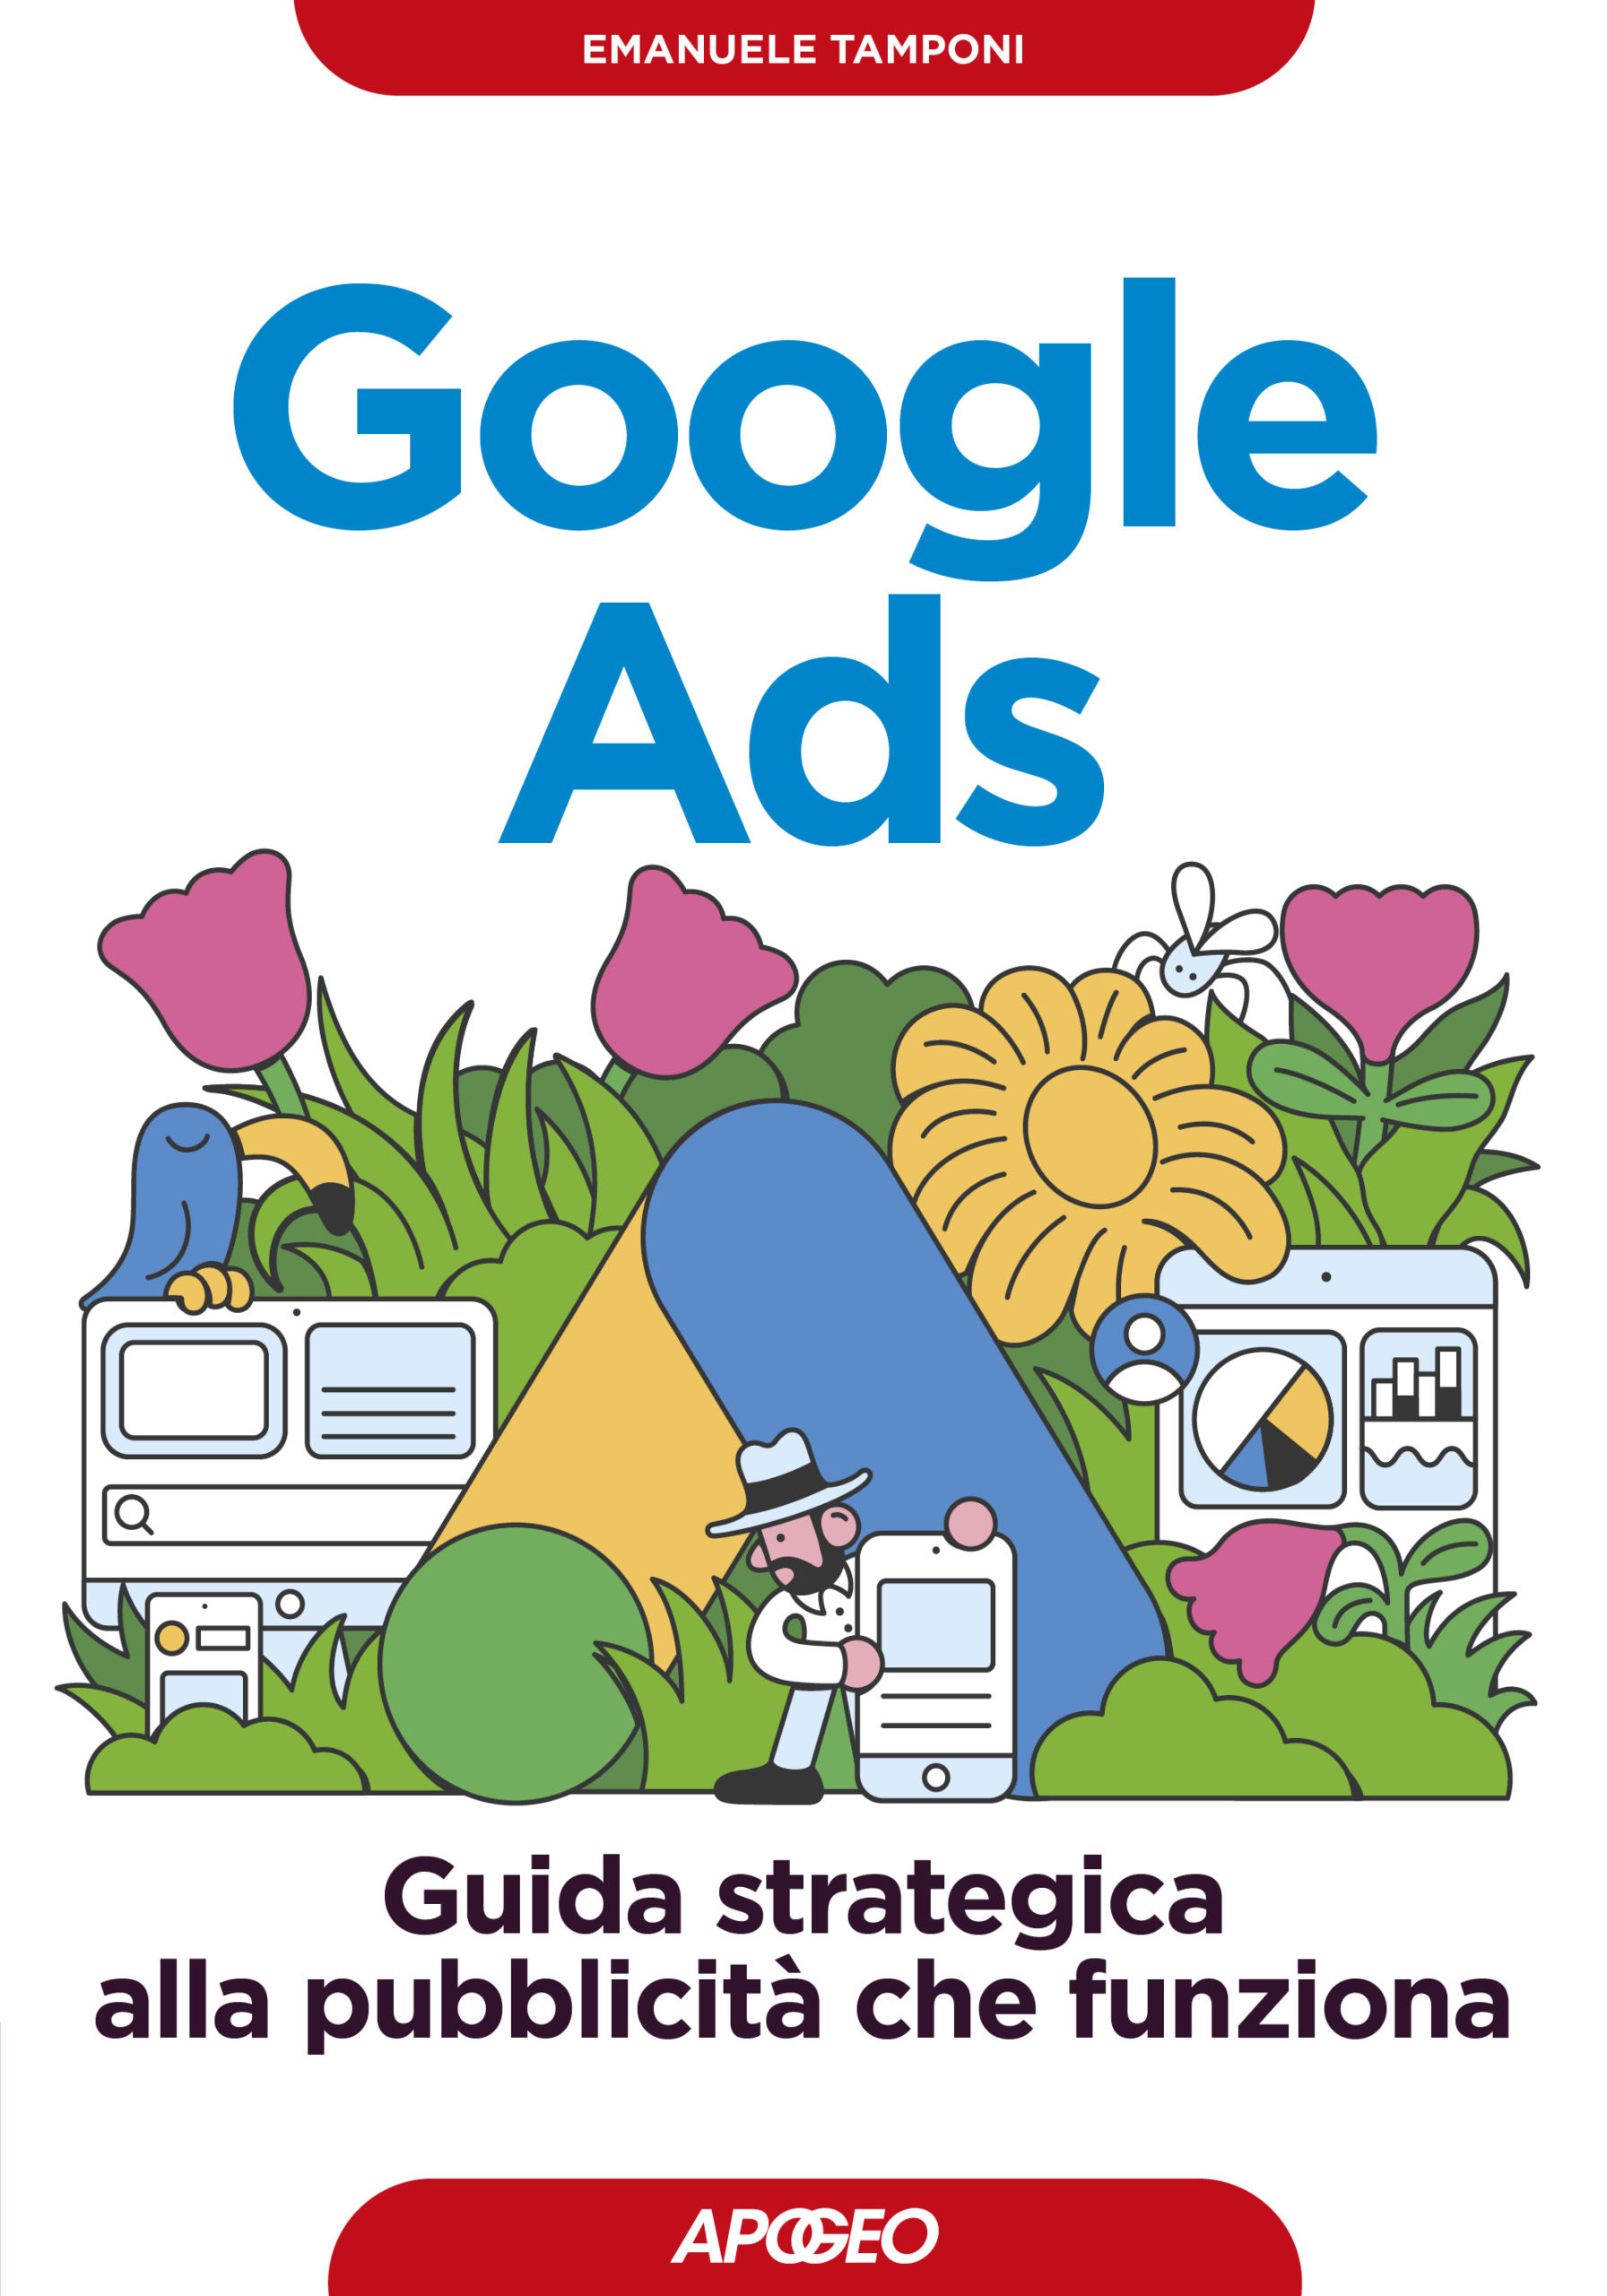 Google Ads - Guida strategica alla pubblicità che funziona, di Emanuale Tamponi